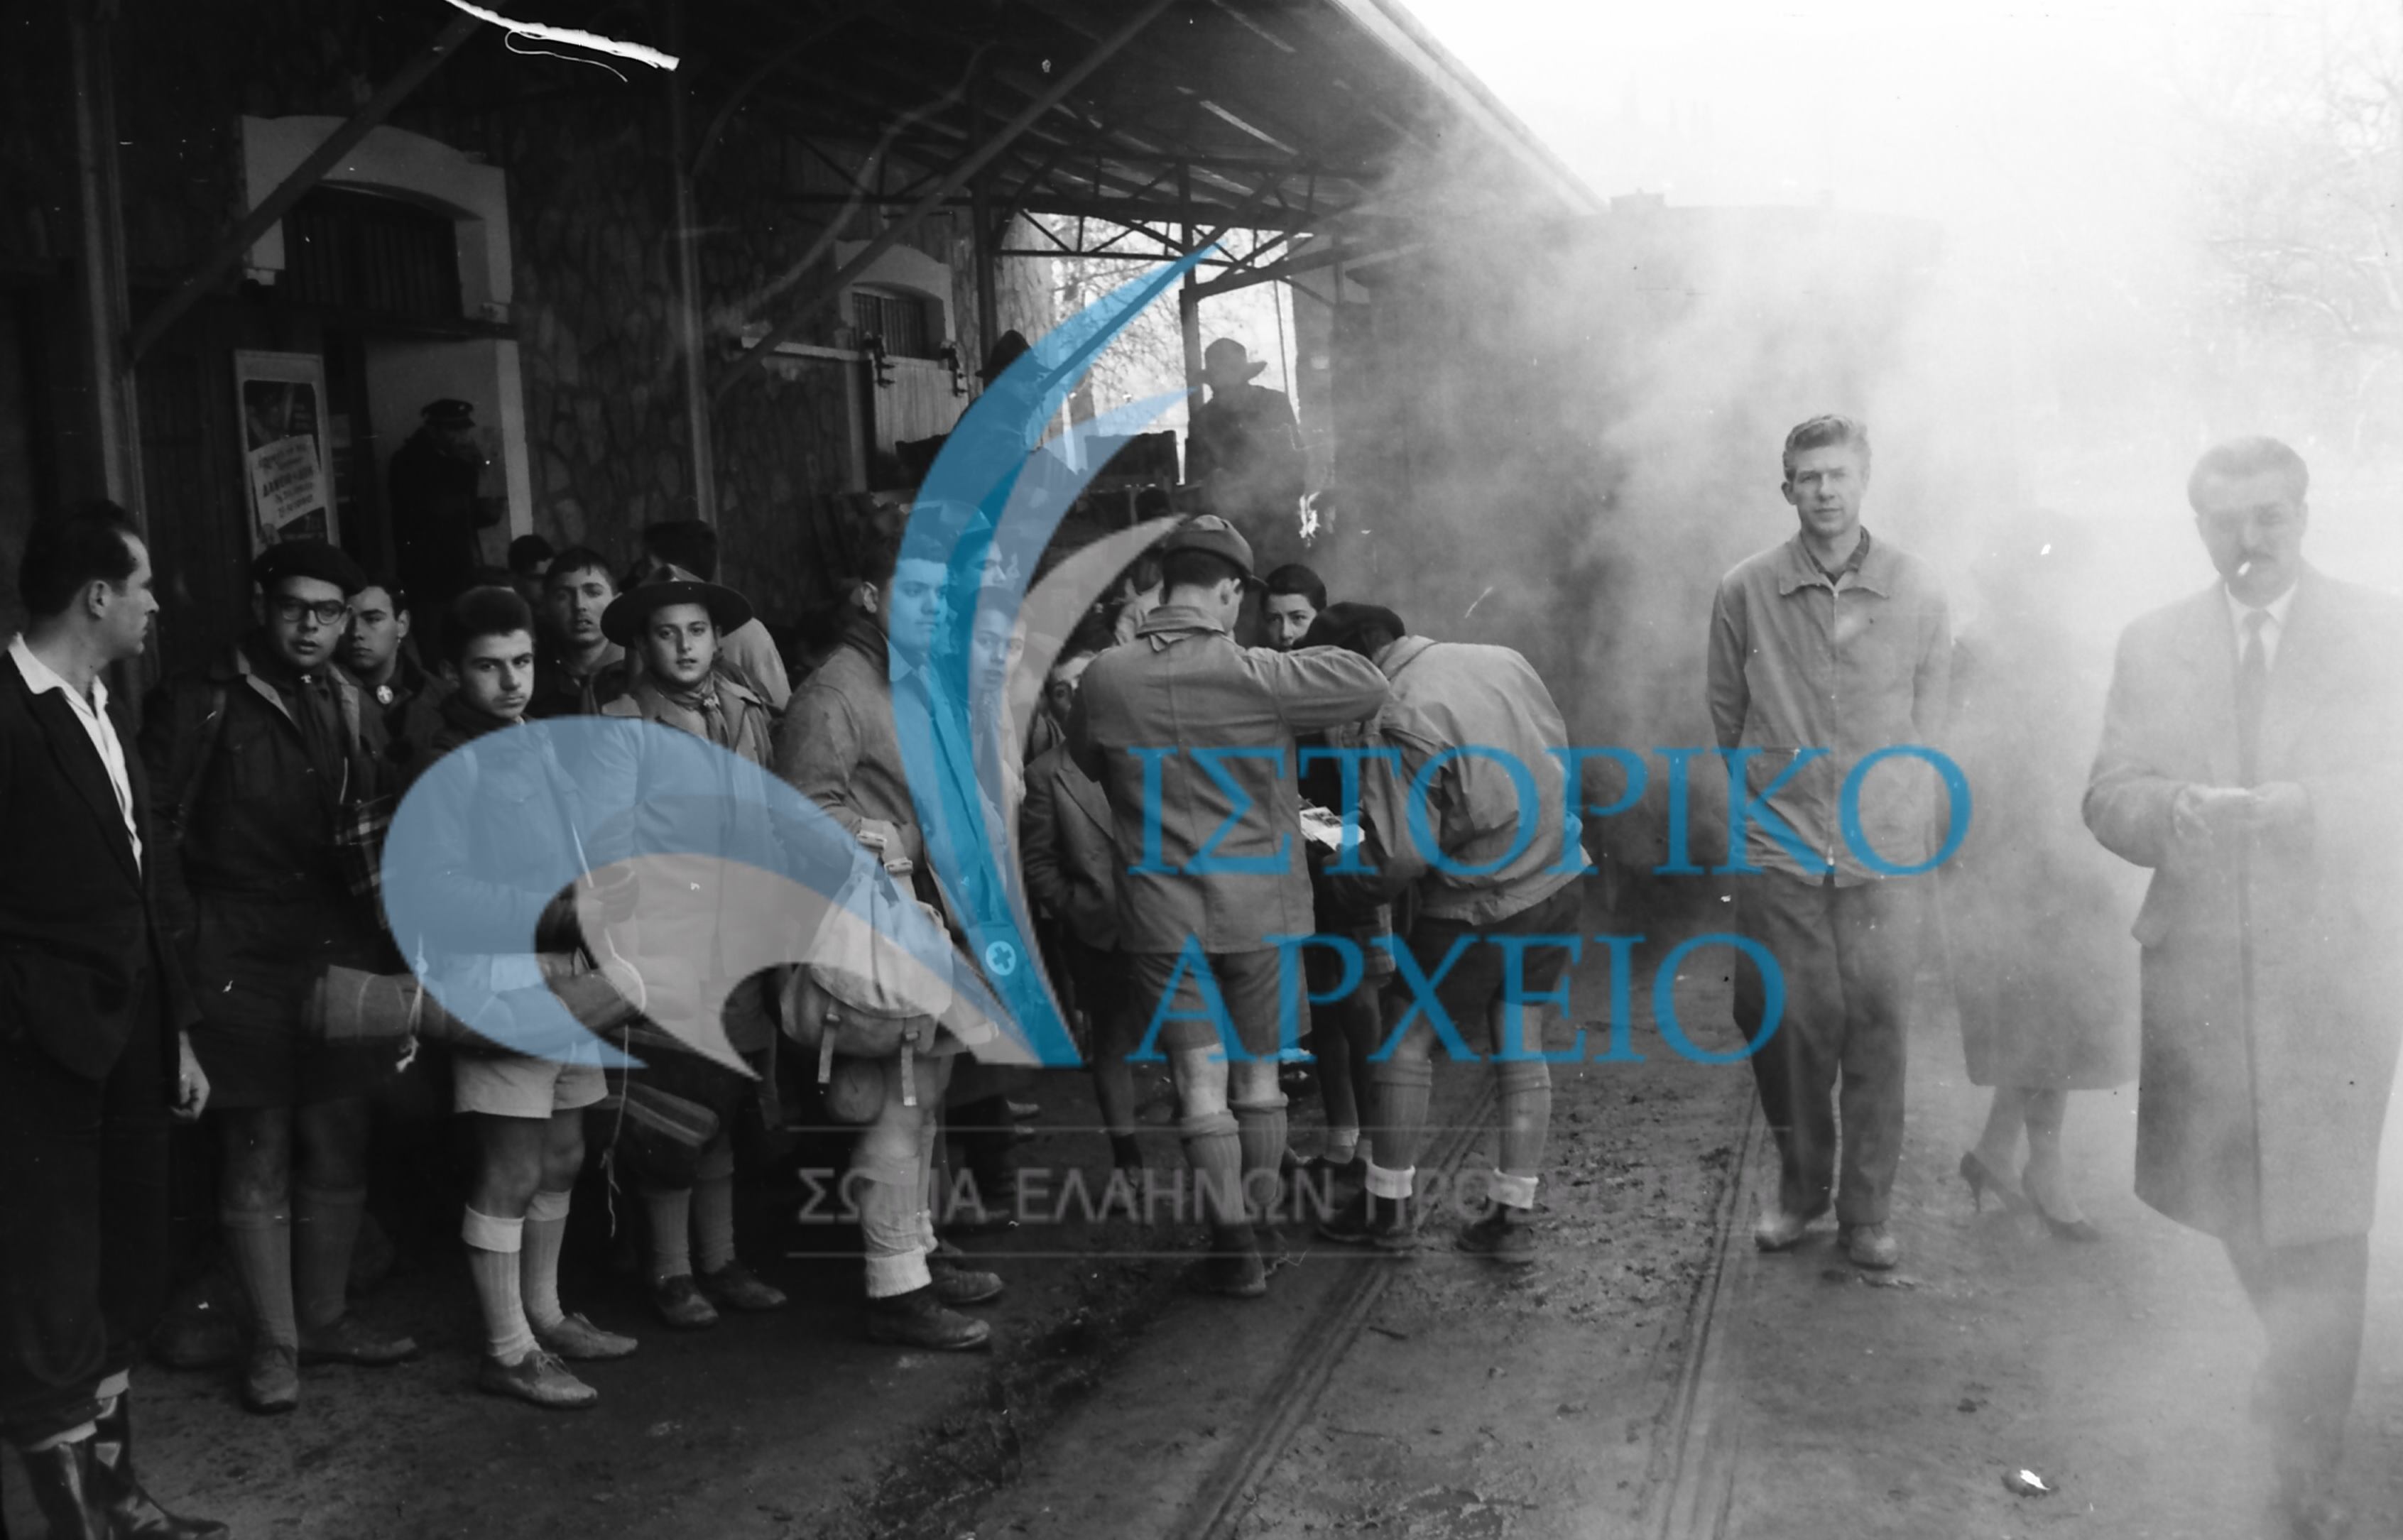 Πρόσκοποι την ώρα της άφιξης στο Σιδηροδρομικό Σταθμό Διακοπτού κατά την διαδρομή τους στην εκδρομή προς τα Καλάβρυτα το 1959.